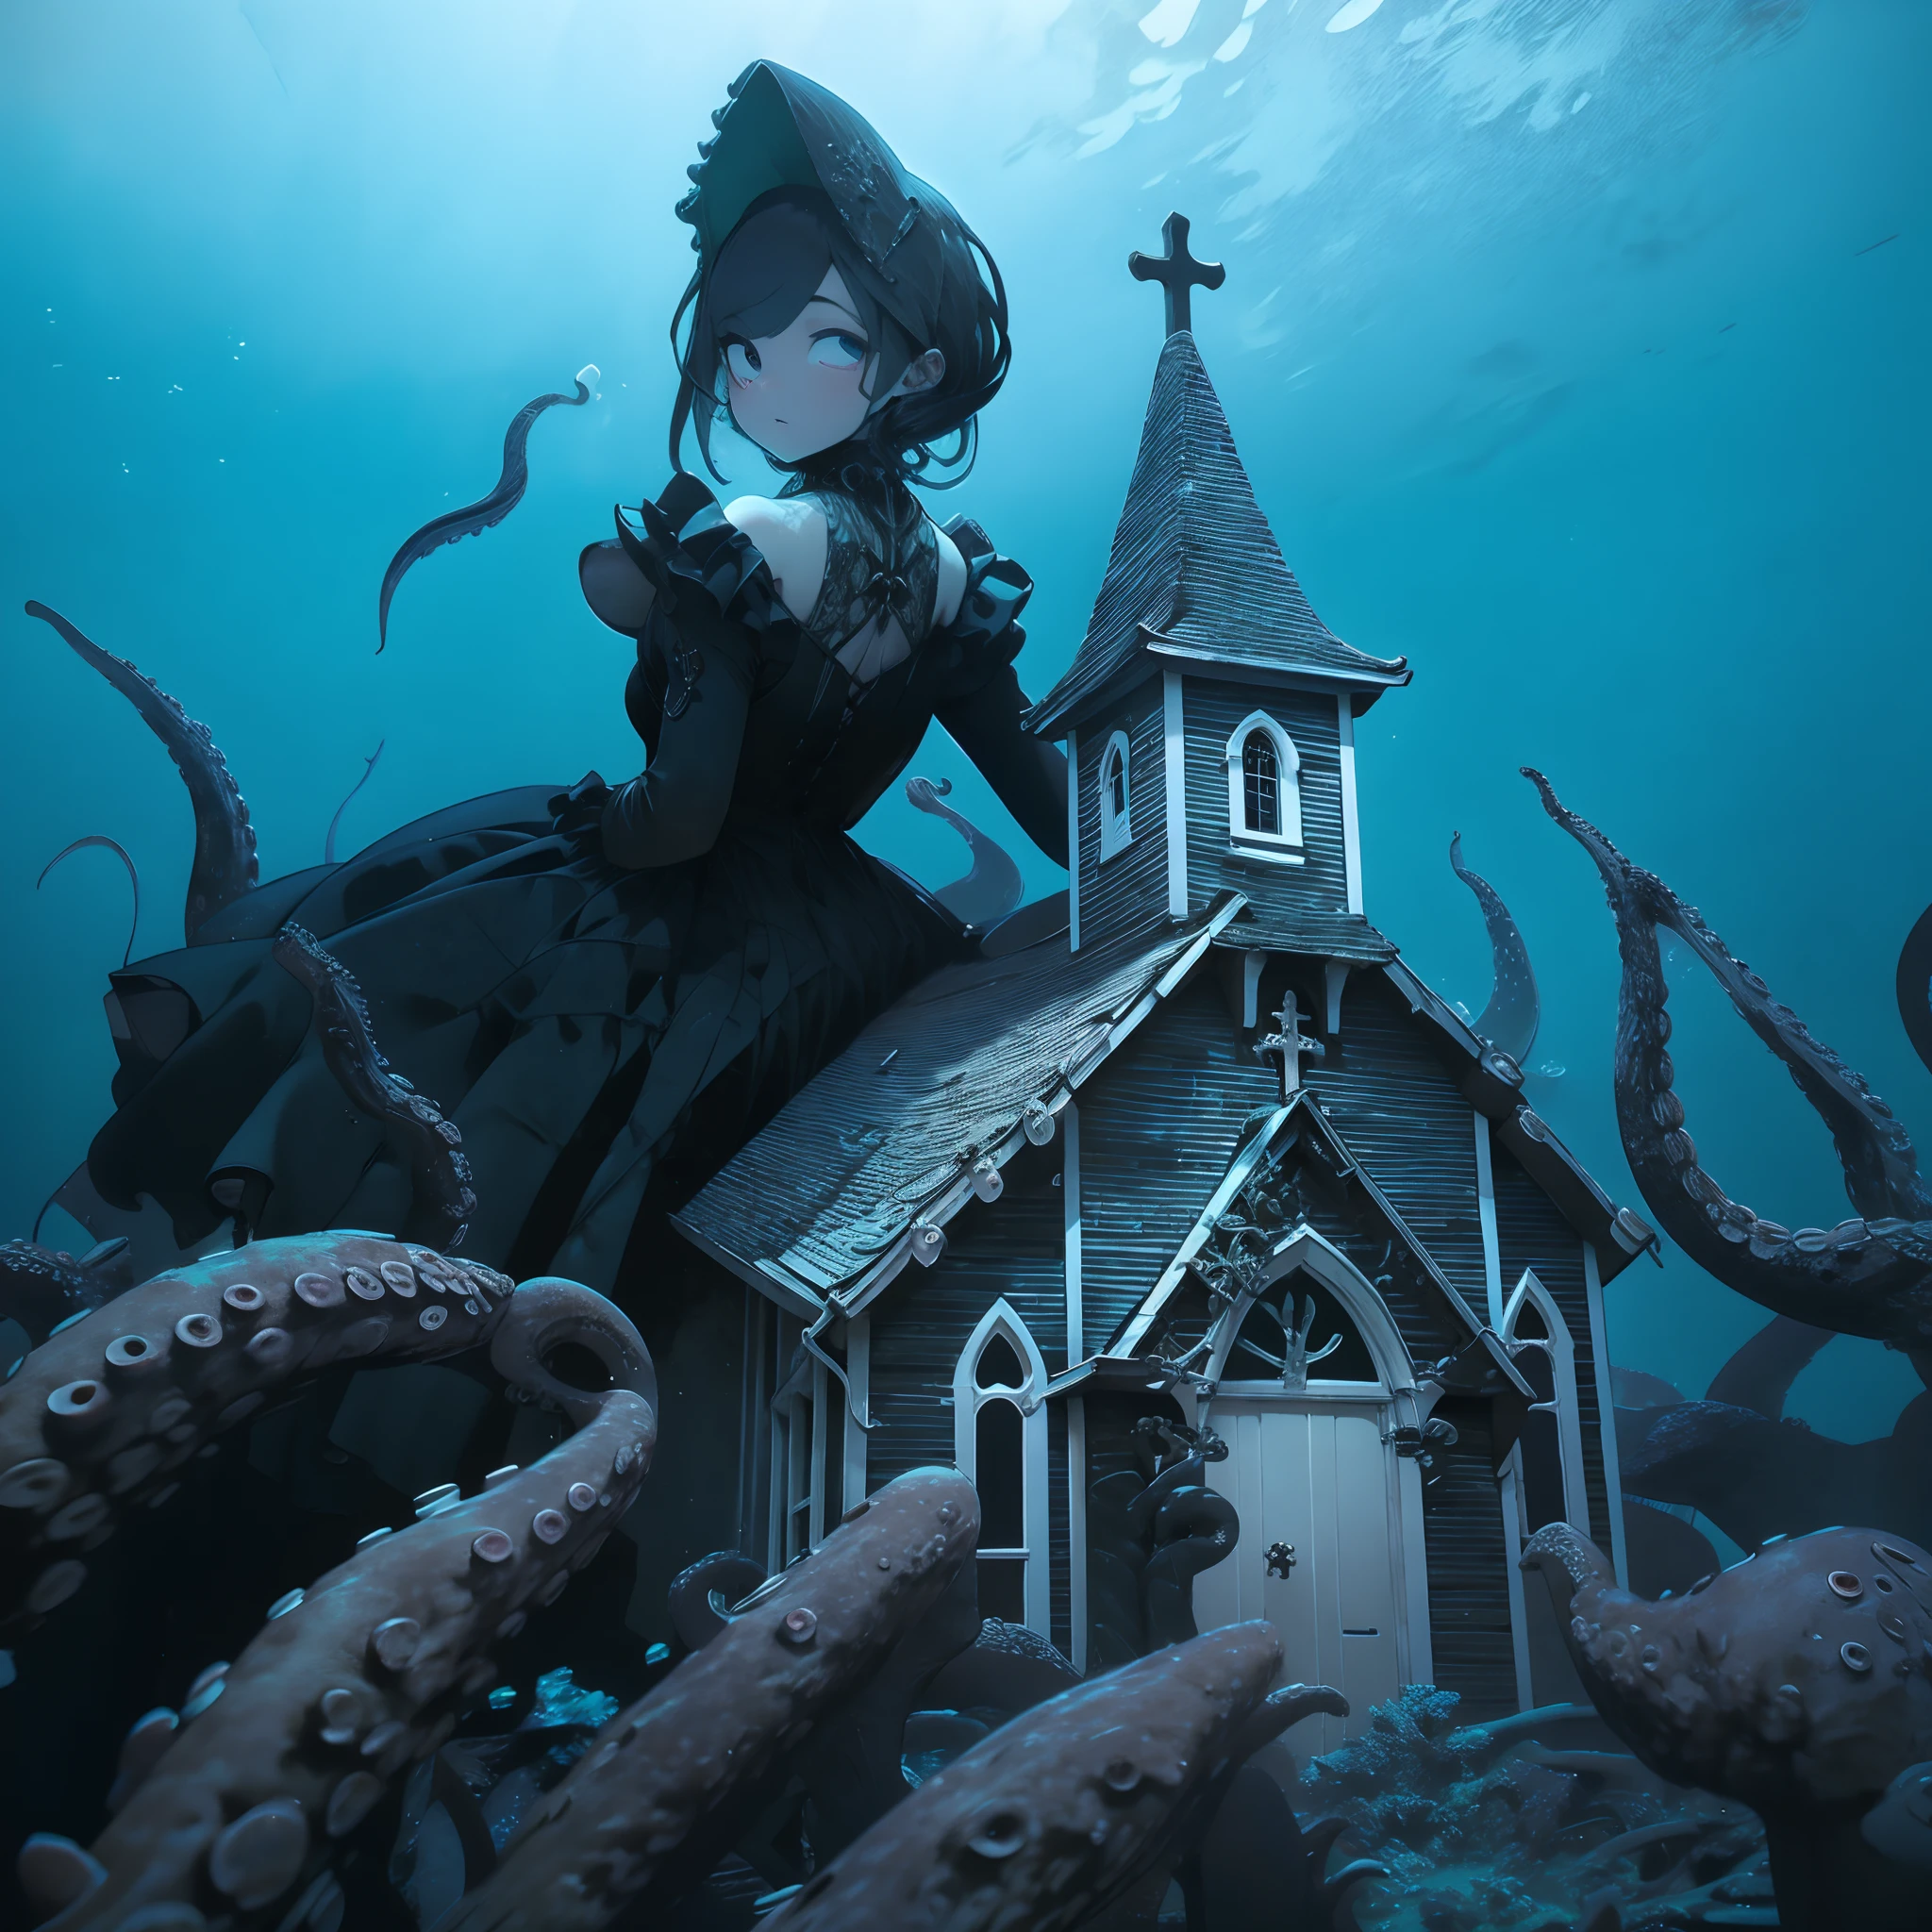 Iglesia Submarina. Es una chica que se asoma por detrás de la iglesia. Es una chica enorme. Lleva un vestido gótico. Tentáculos que envuelven a la iglesia.